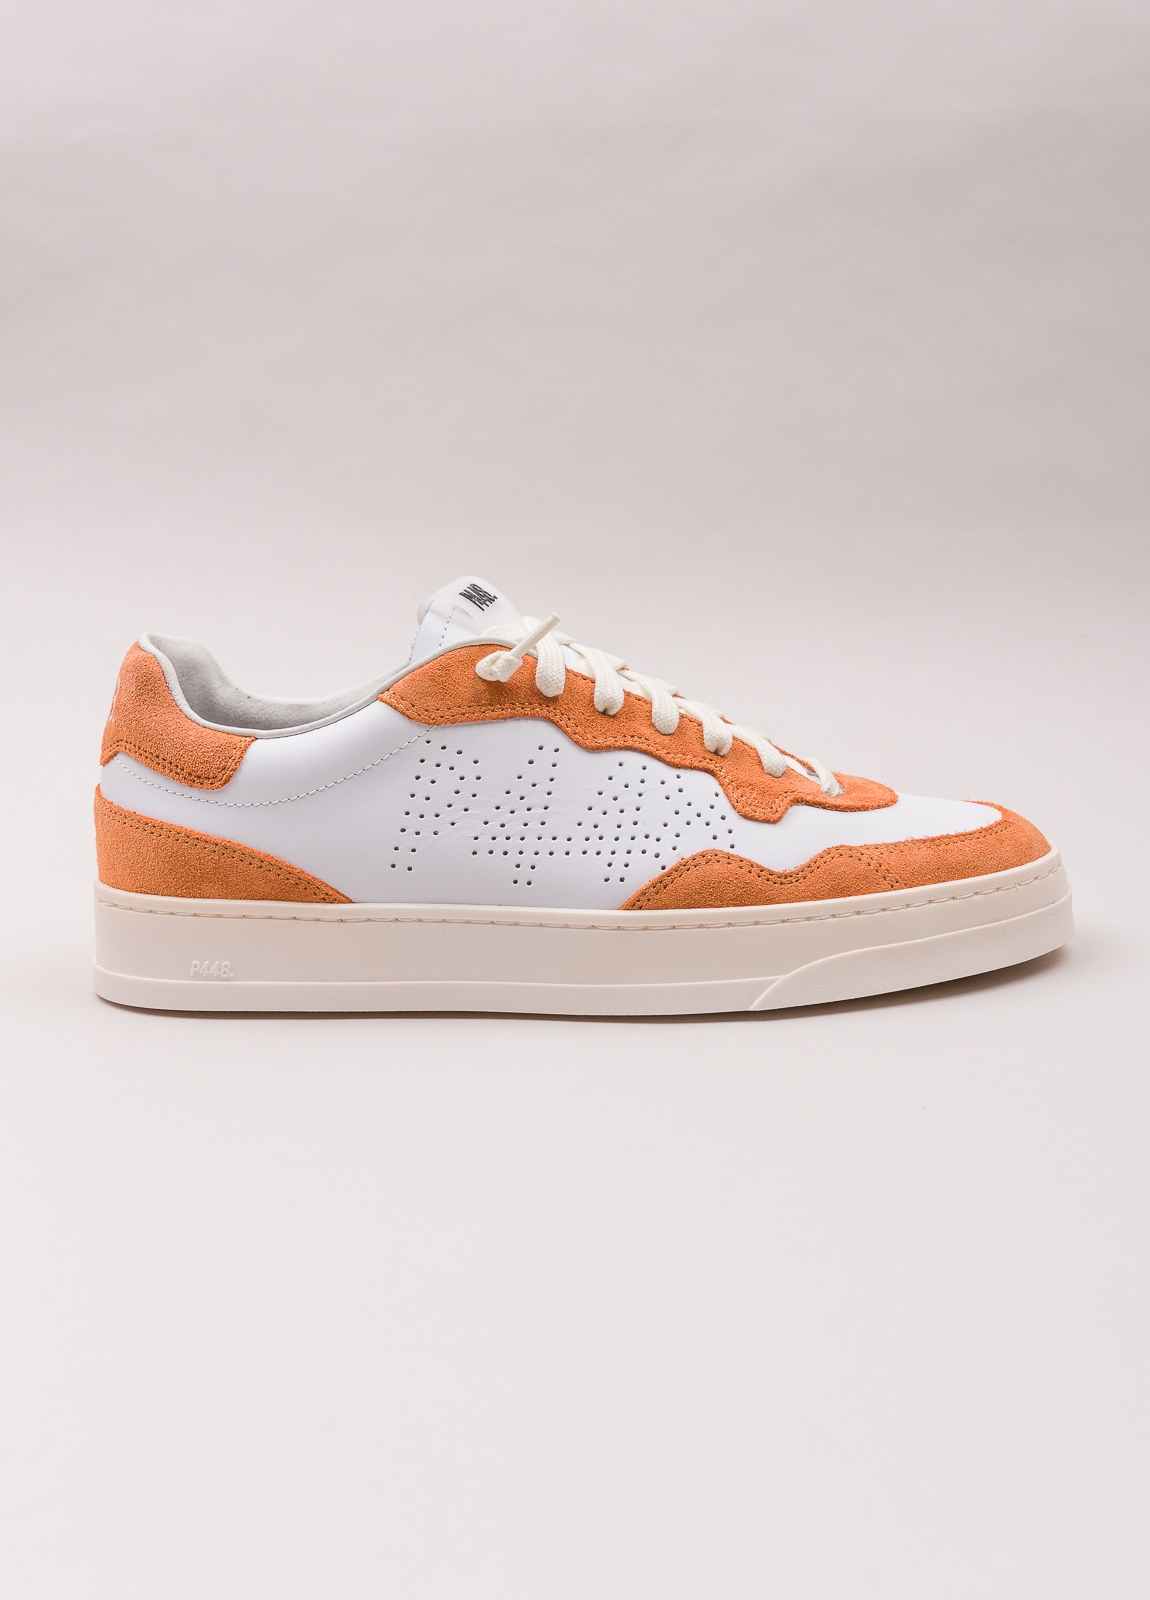 Sneaker P448 blanca y naranja - Ítem5